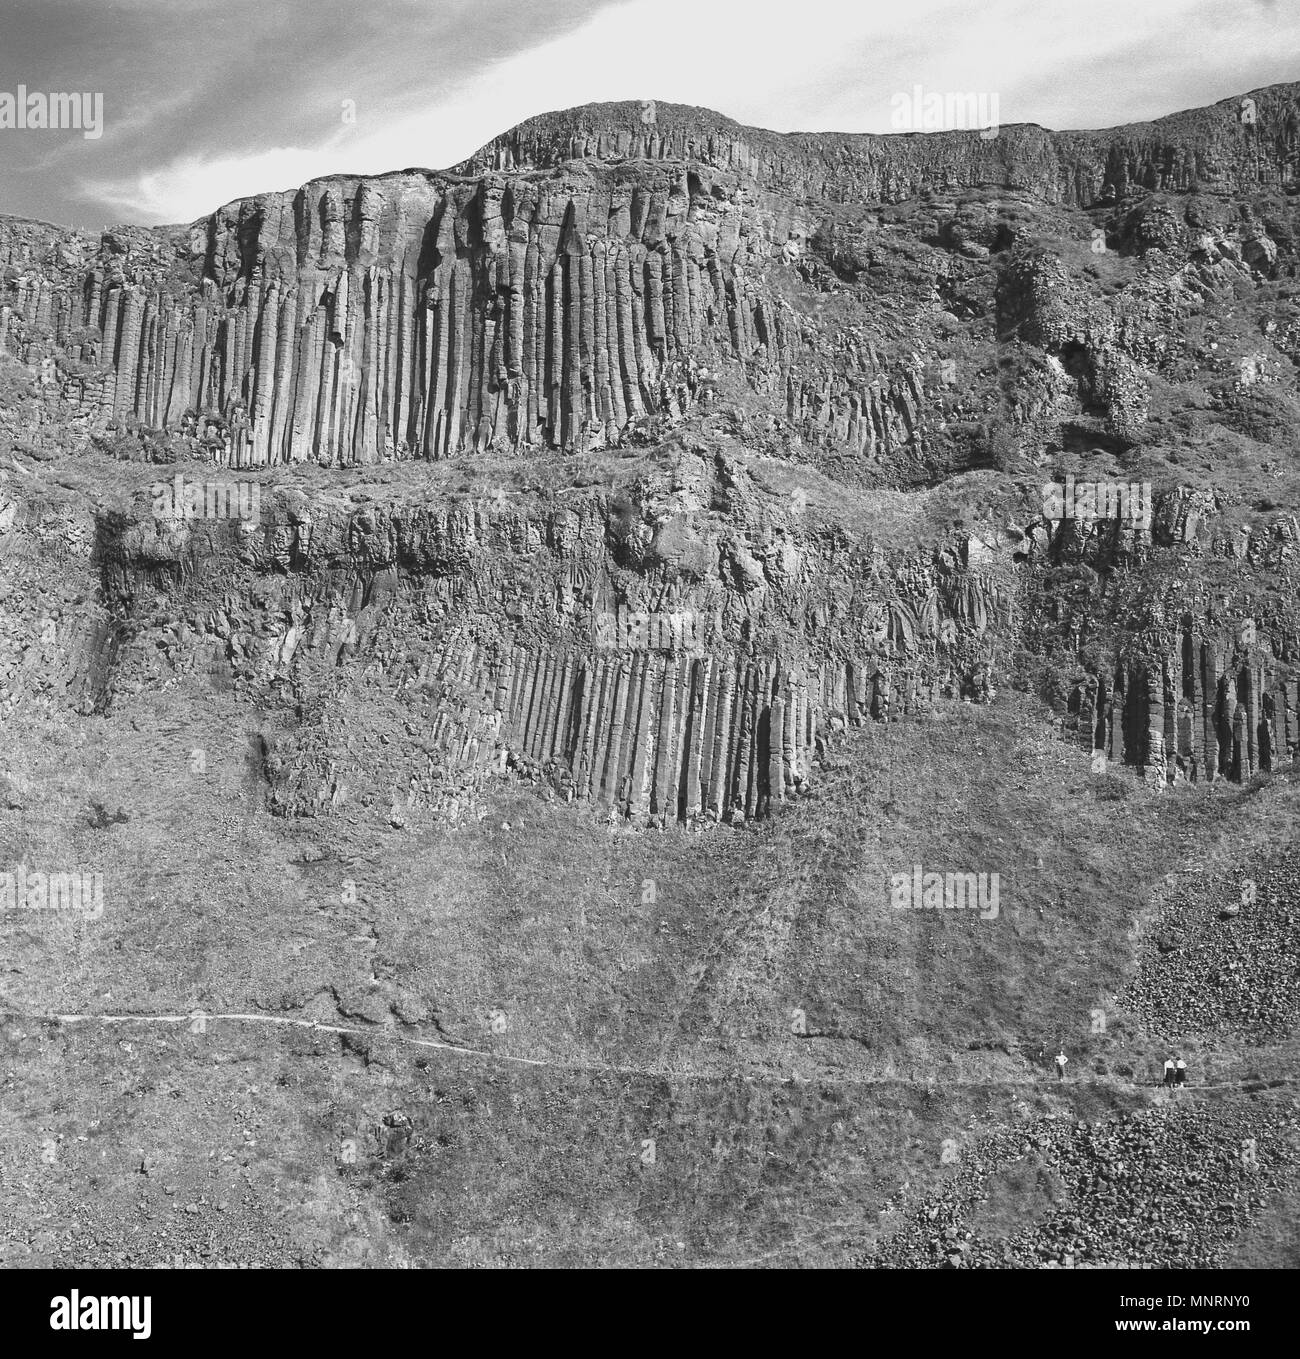 Années 1950, tableau historique de l'incroyable anciennes formations rocheuses sur les falaises de la Chaussée des Géants, en Irlande du Nord. Banque D'Images